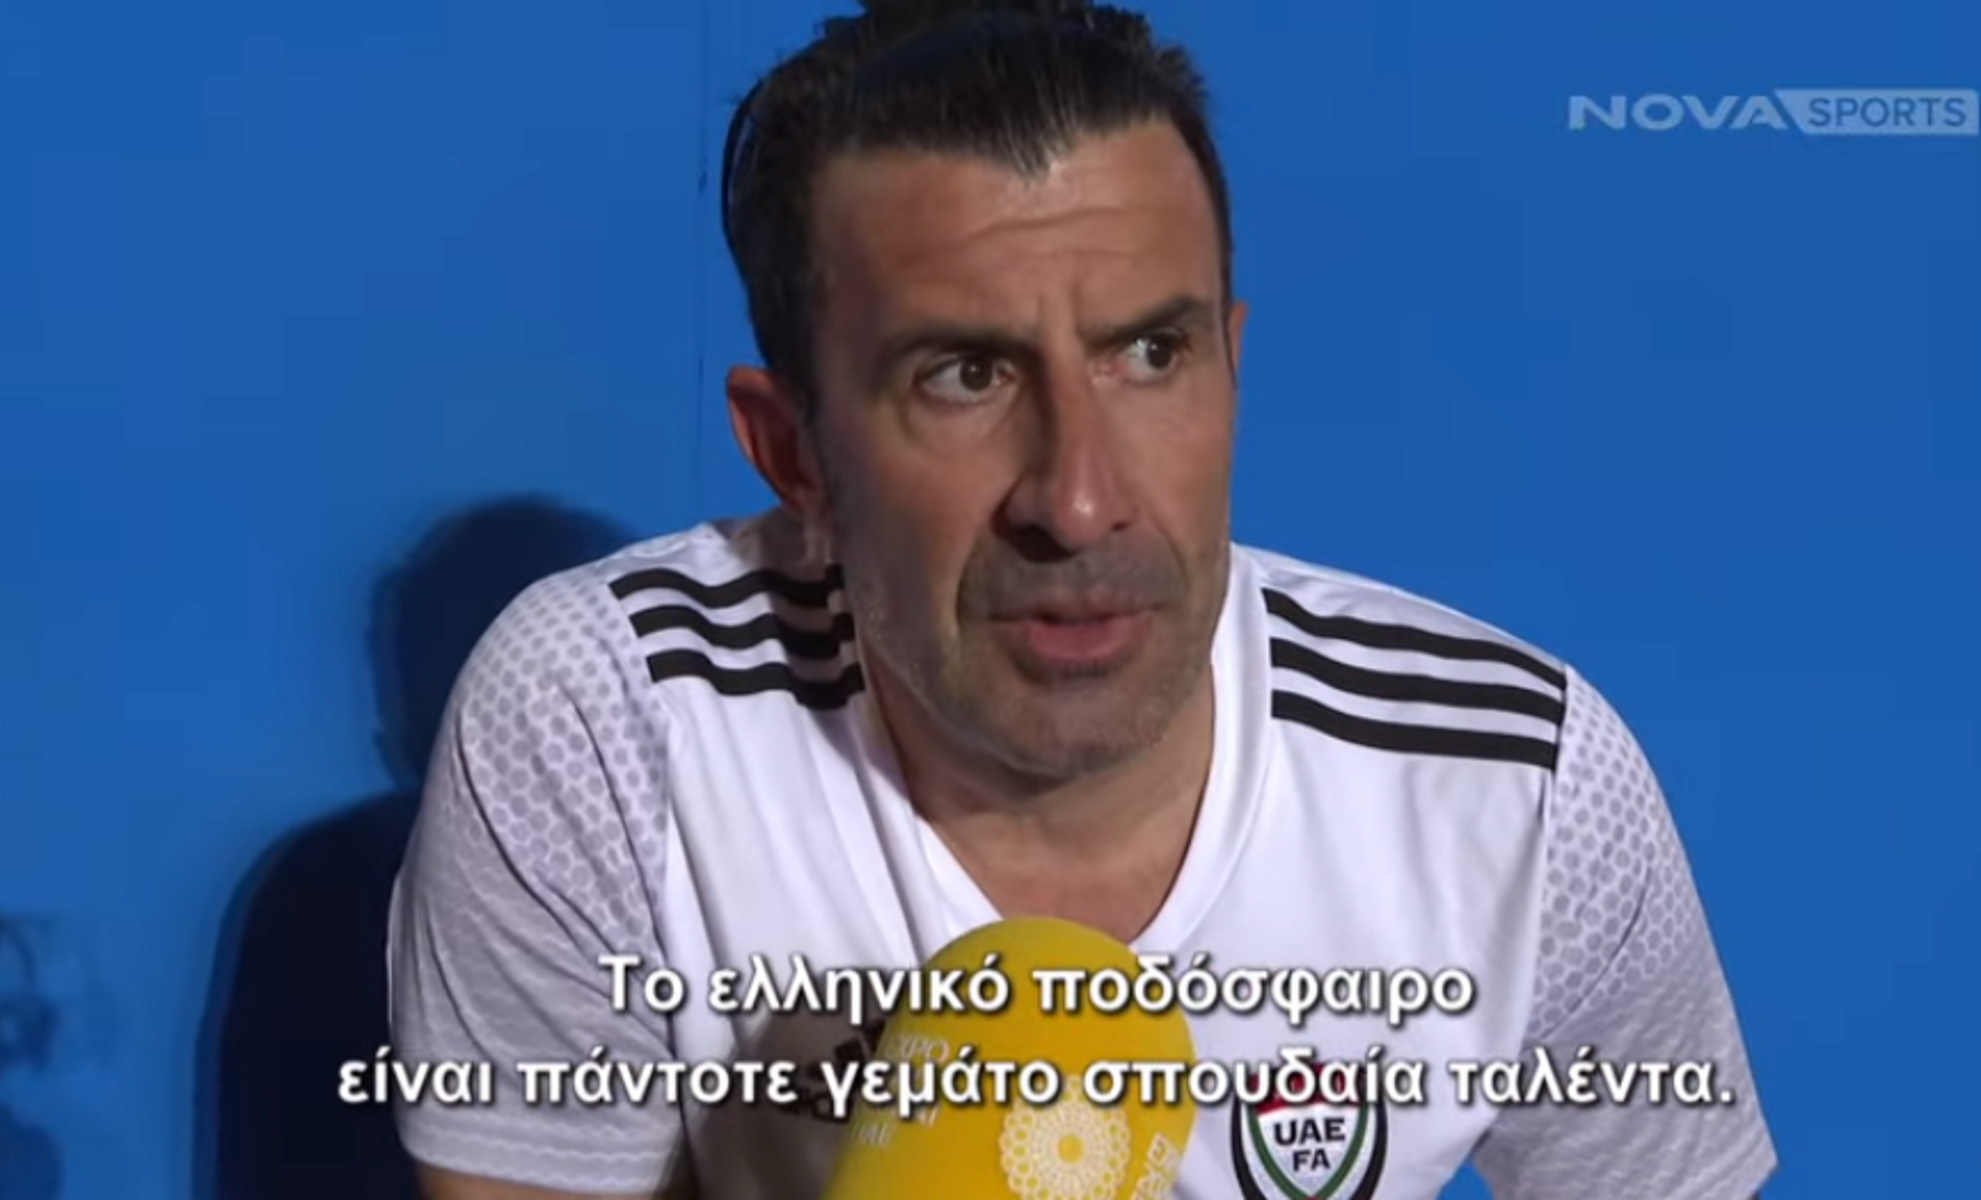 Λουίς Φίγκο στο Monday FC: «Το ελληνικό ποδόσφαιρο είναι γεμάτο από σπουδαία ταλέντα»